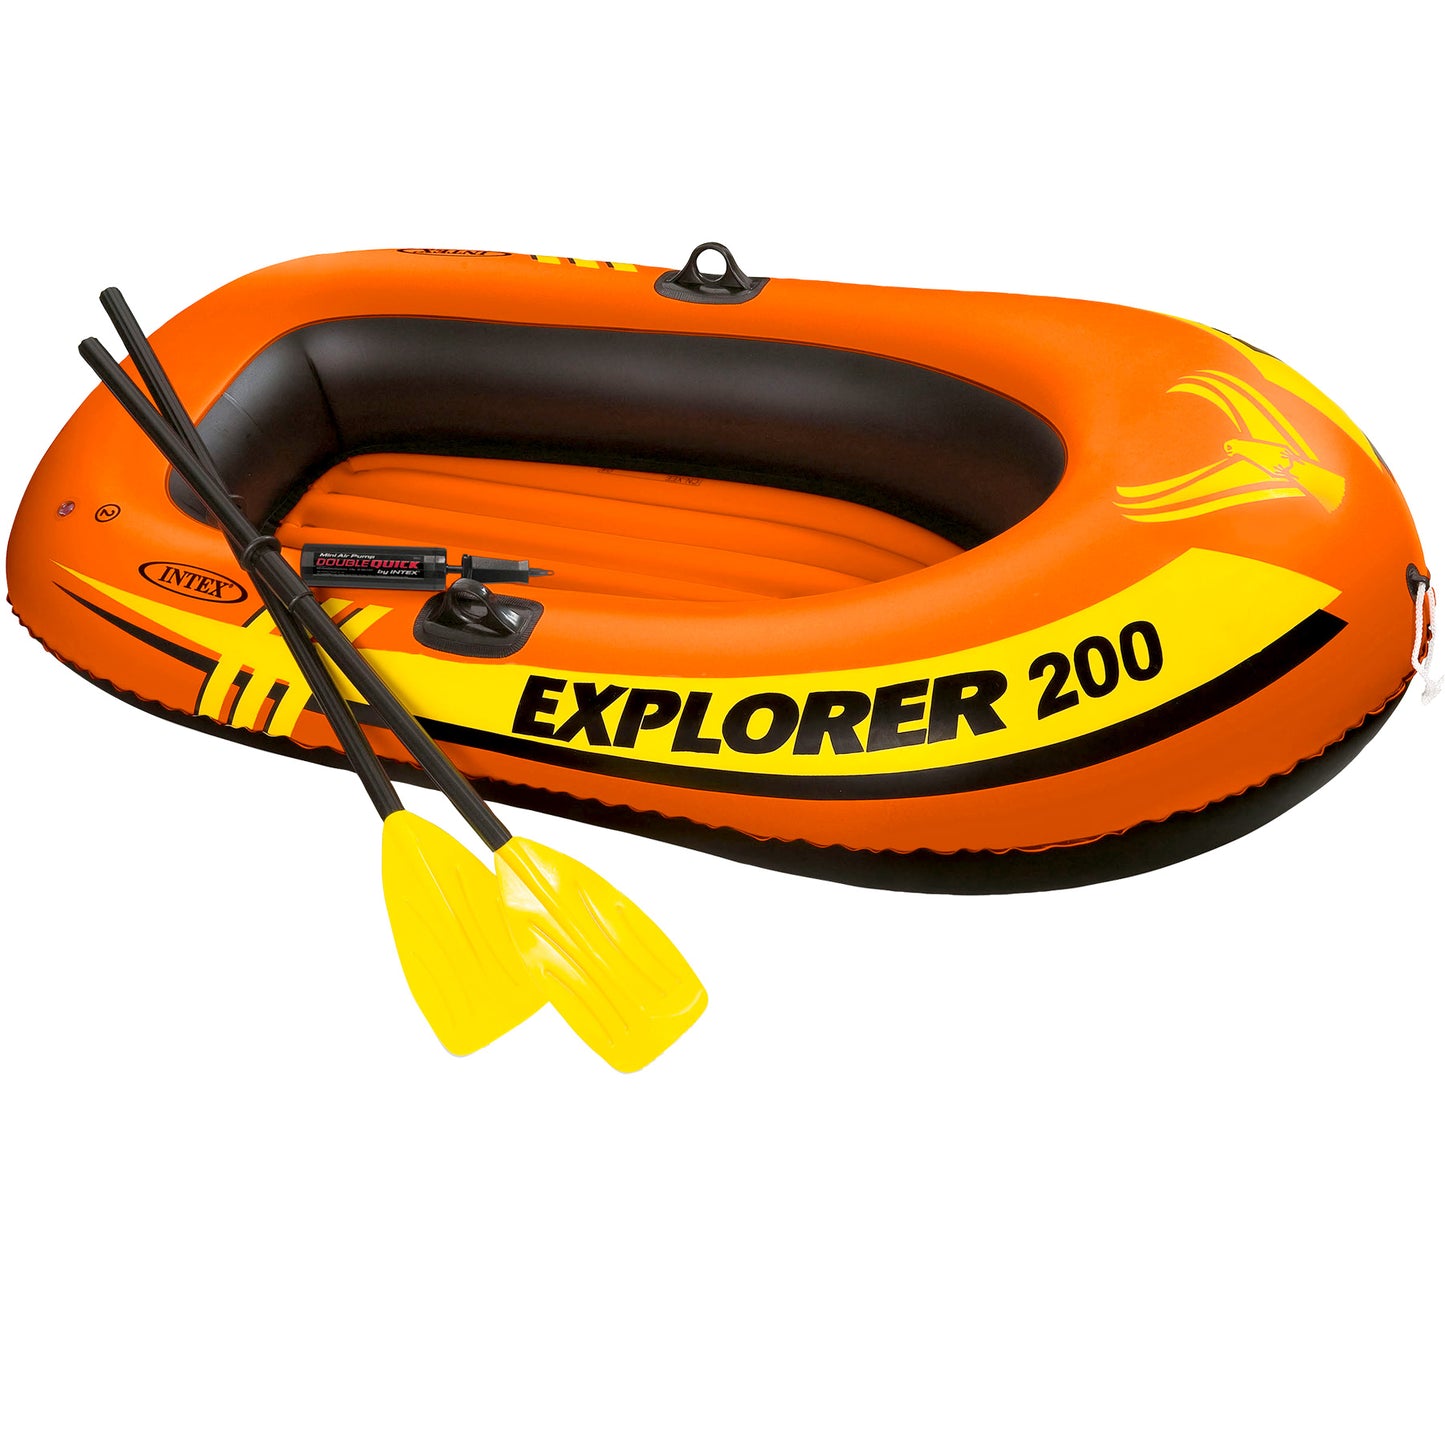 Intex Explorer 200 Boat Set, New Orange, Size: 2 Person, Intex